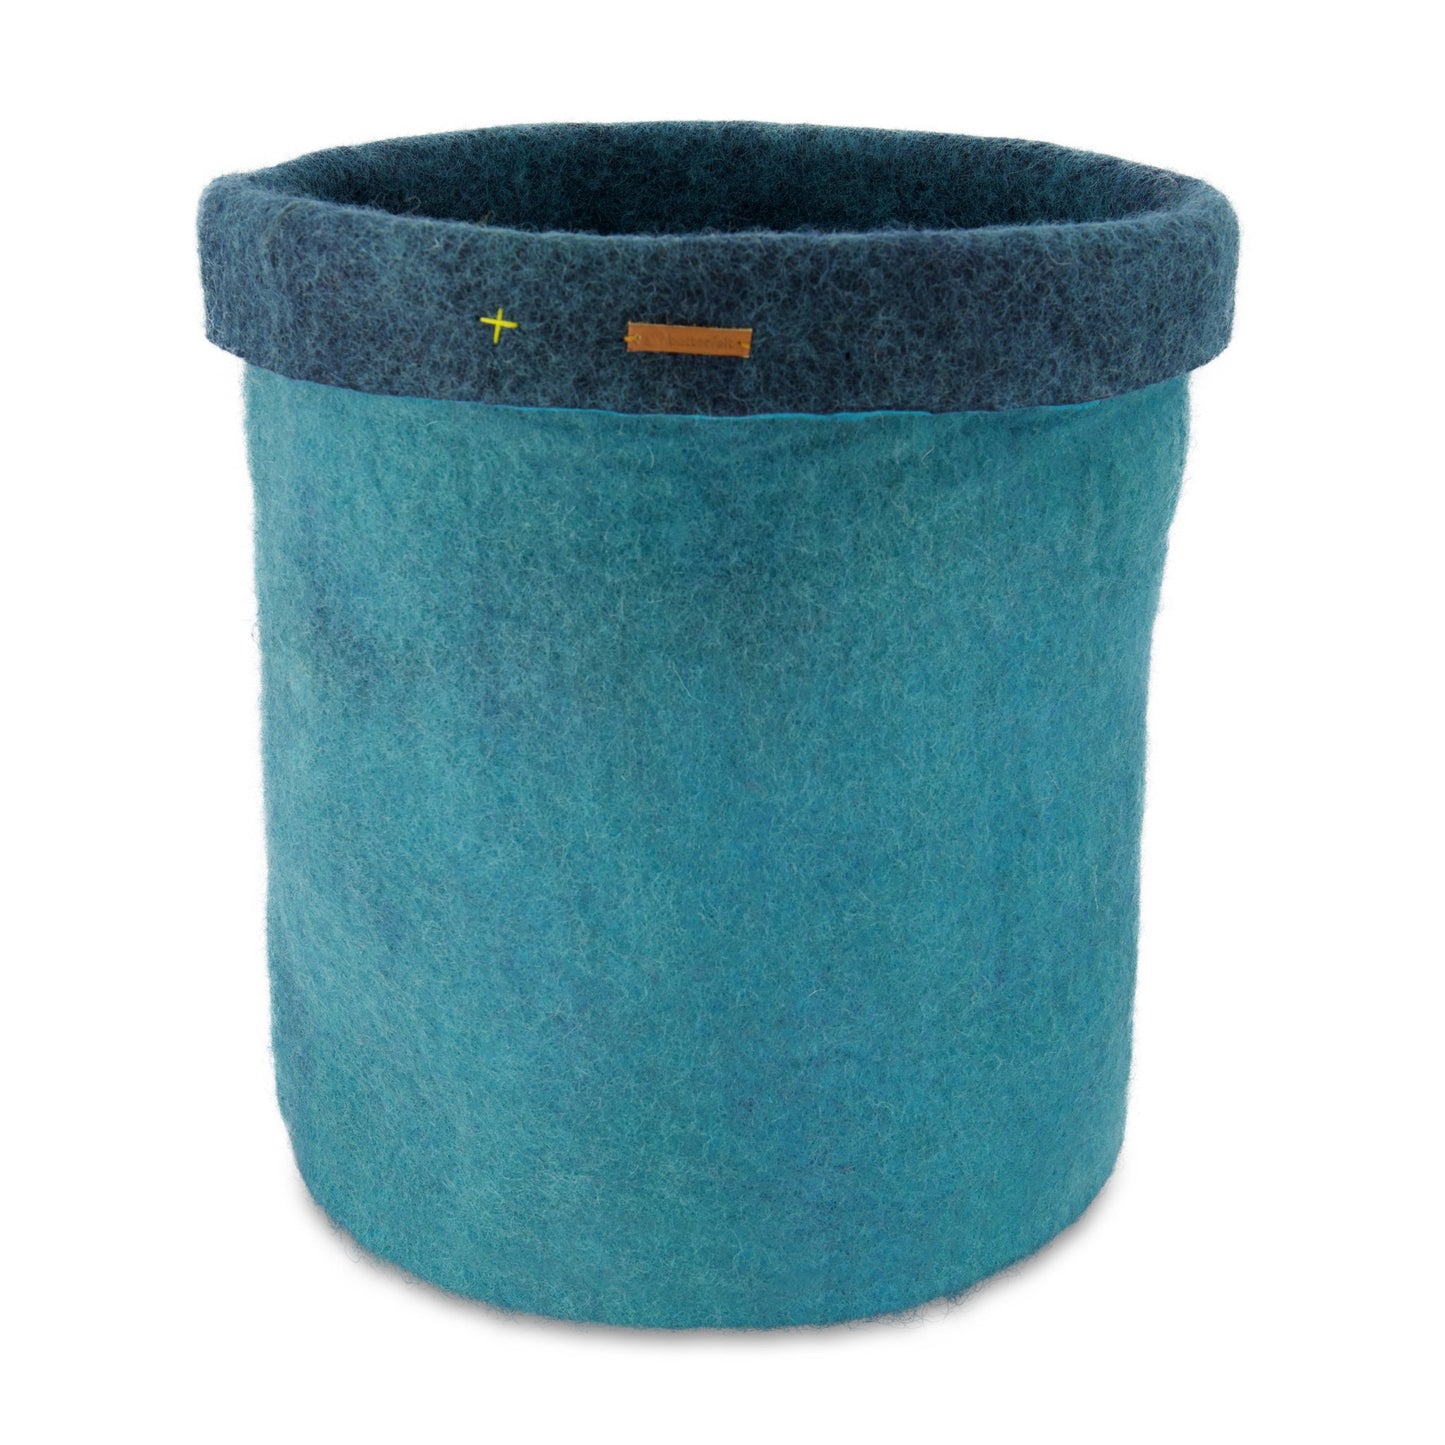 Felt Storage Basket - Turquoise